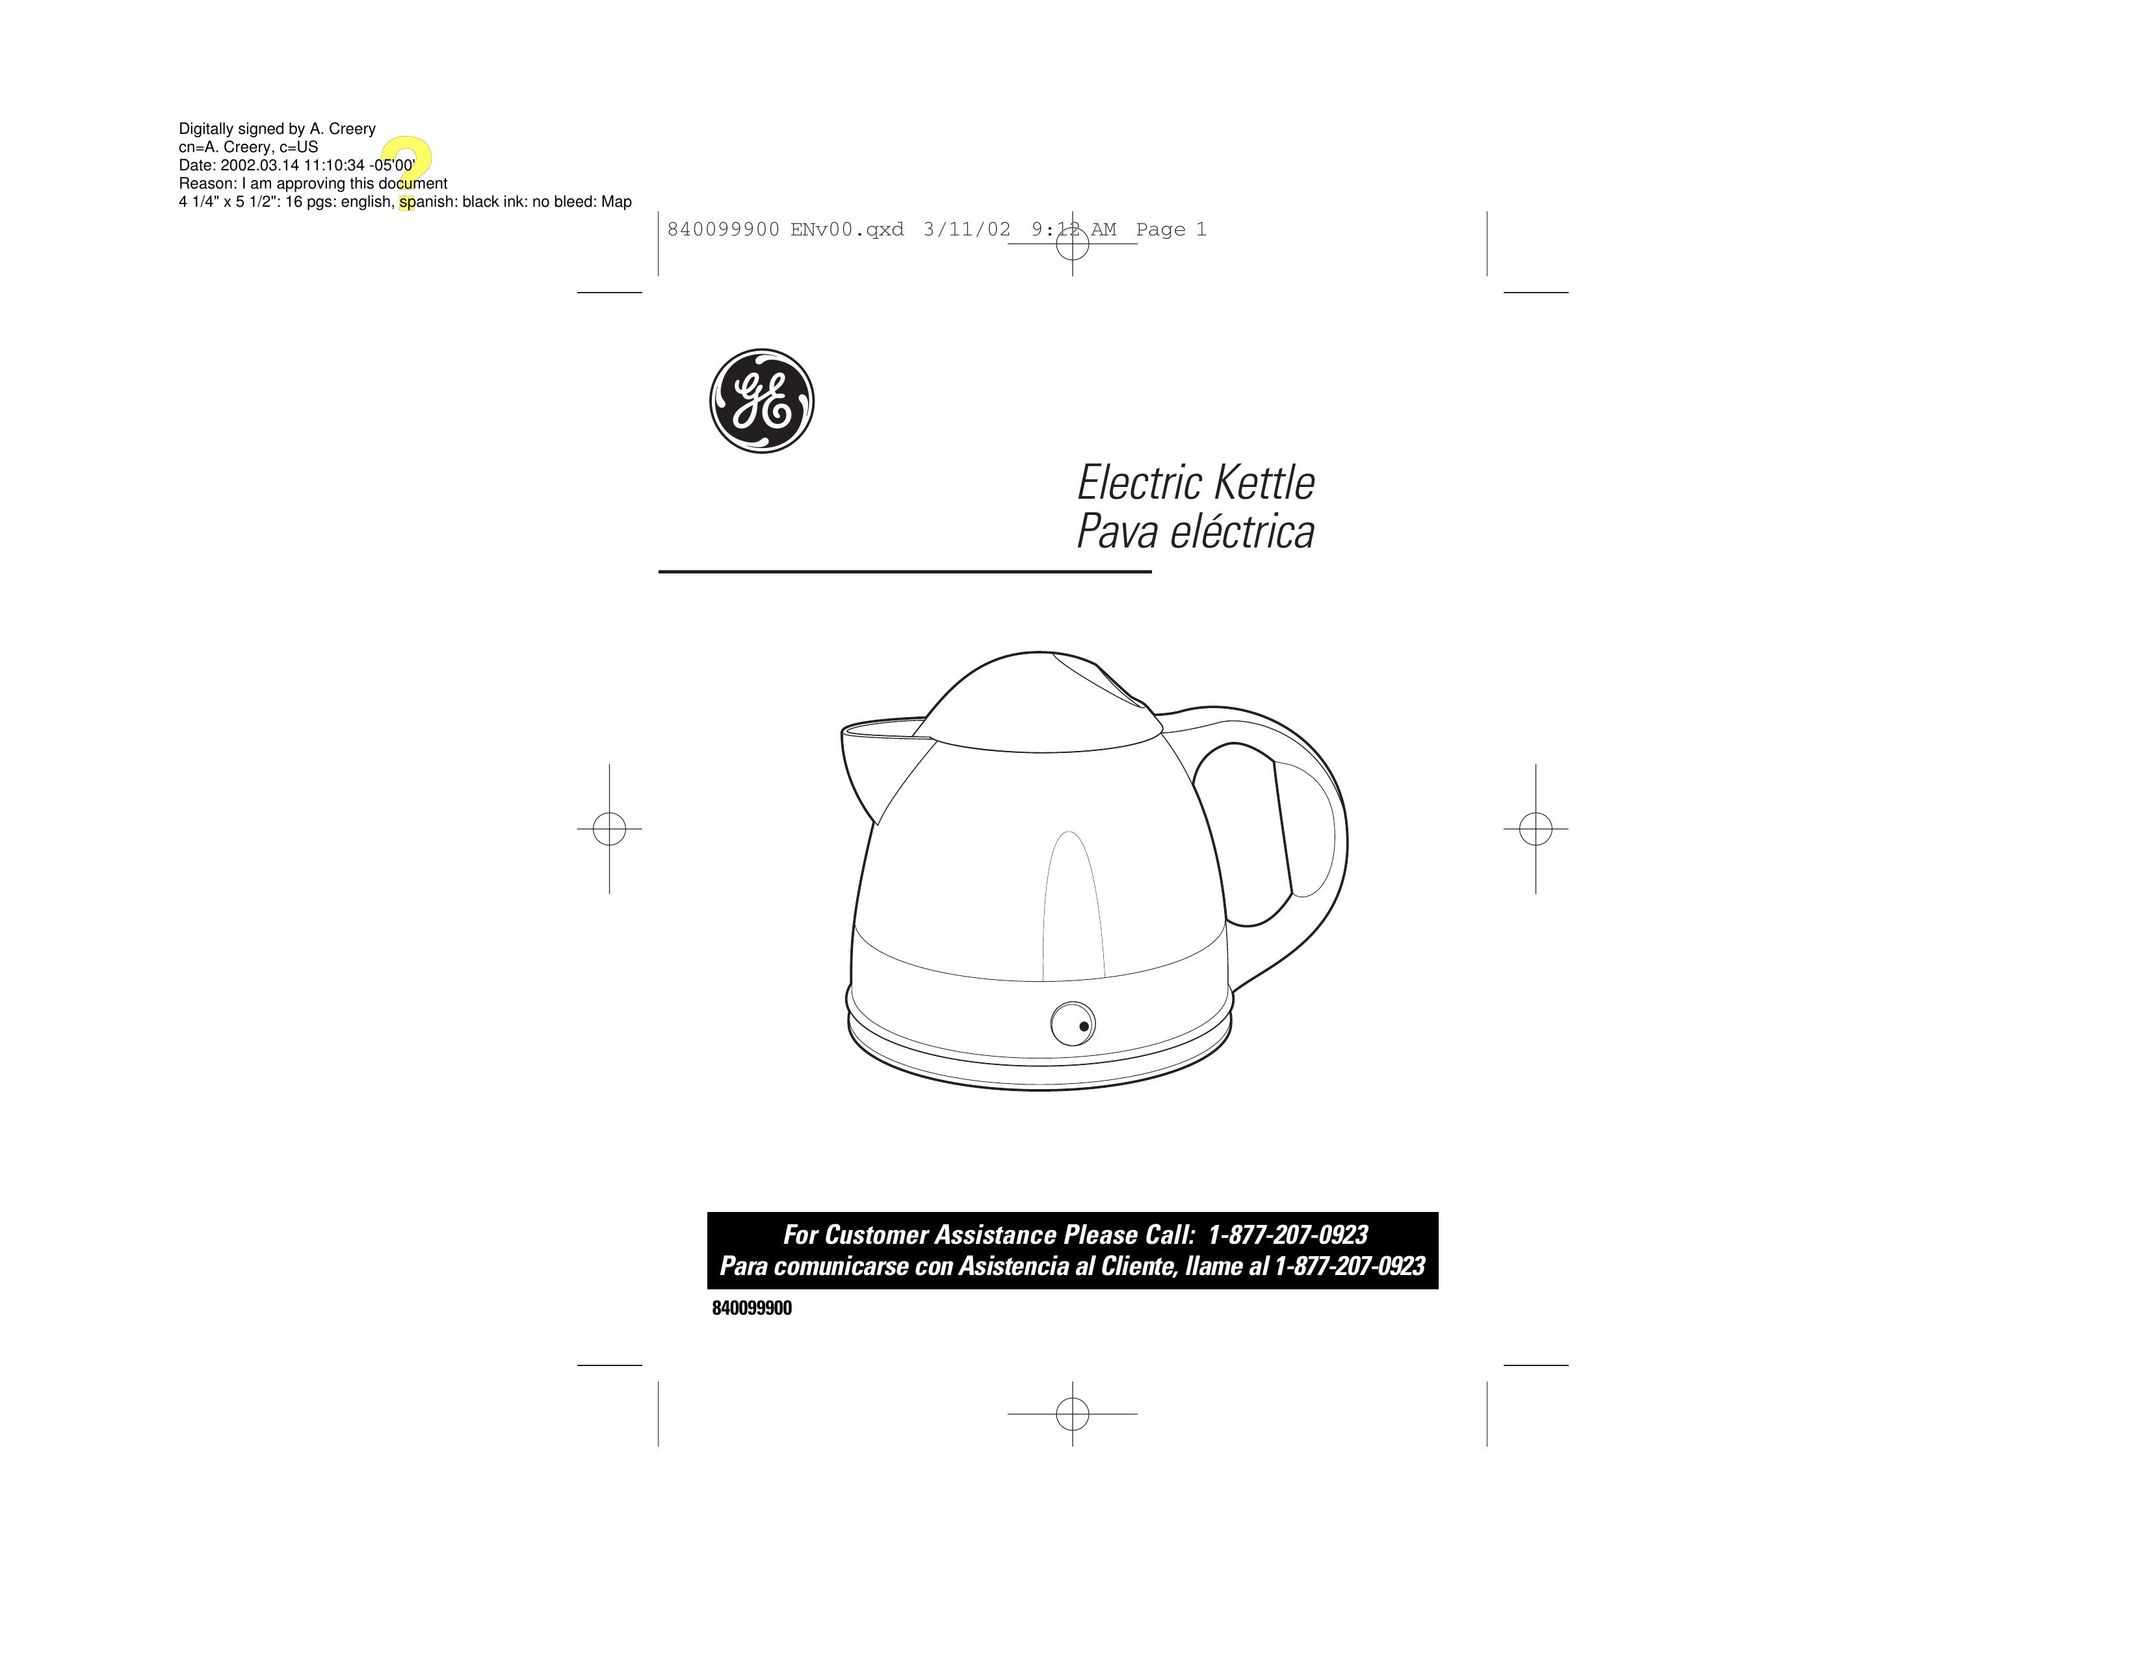 GE 840099900 Hot Beverage Maker User Manual